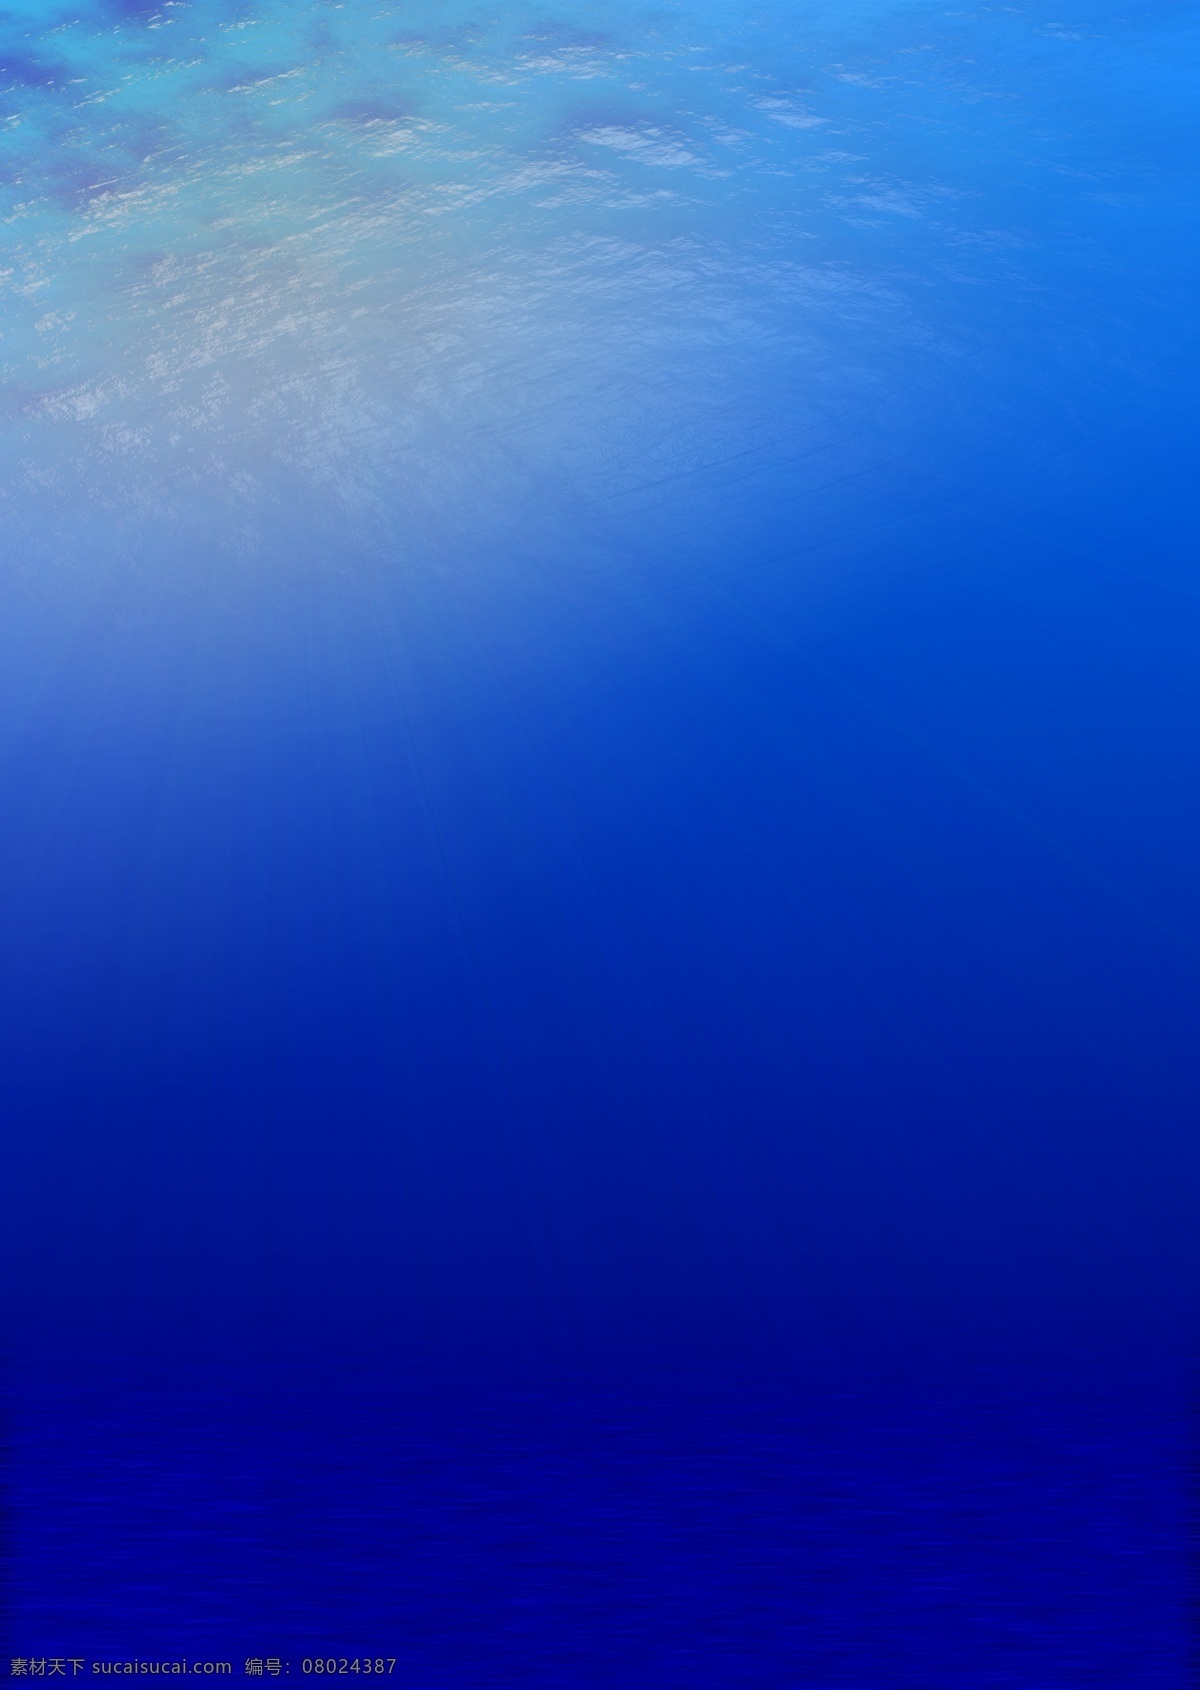 海水背景 海洋 海水 背景 蓝色模板 海洋背景 自然风光 风景 自然景观